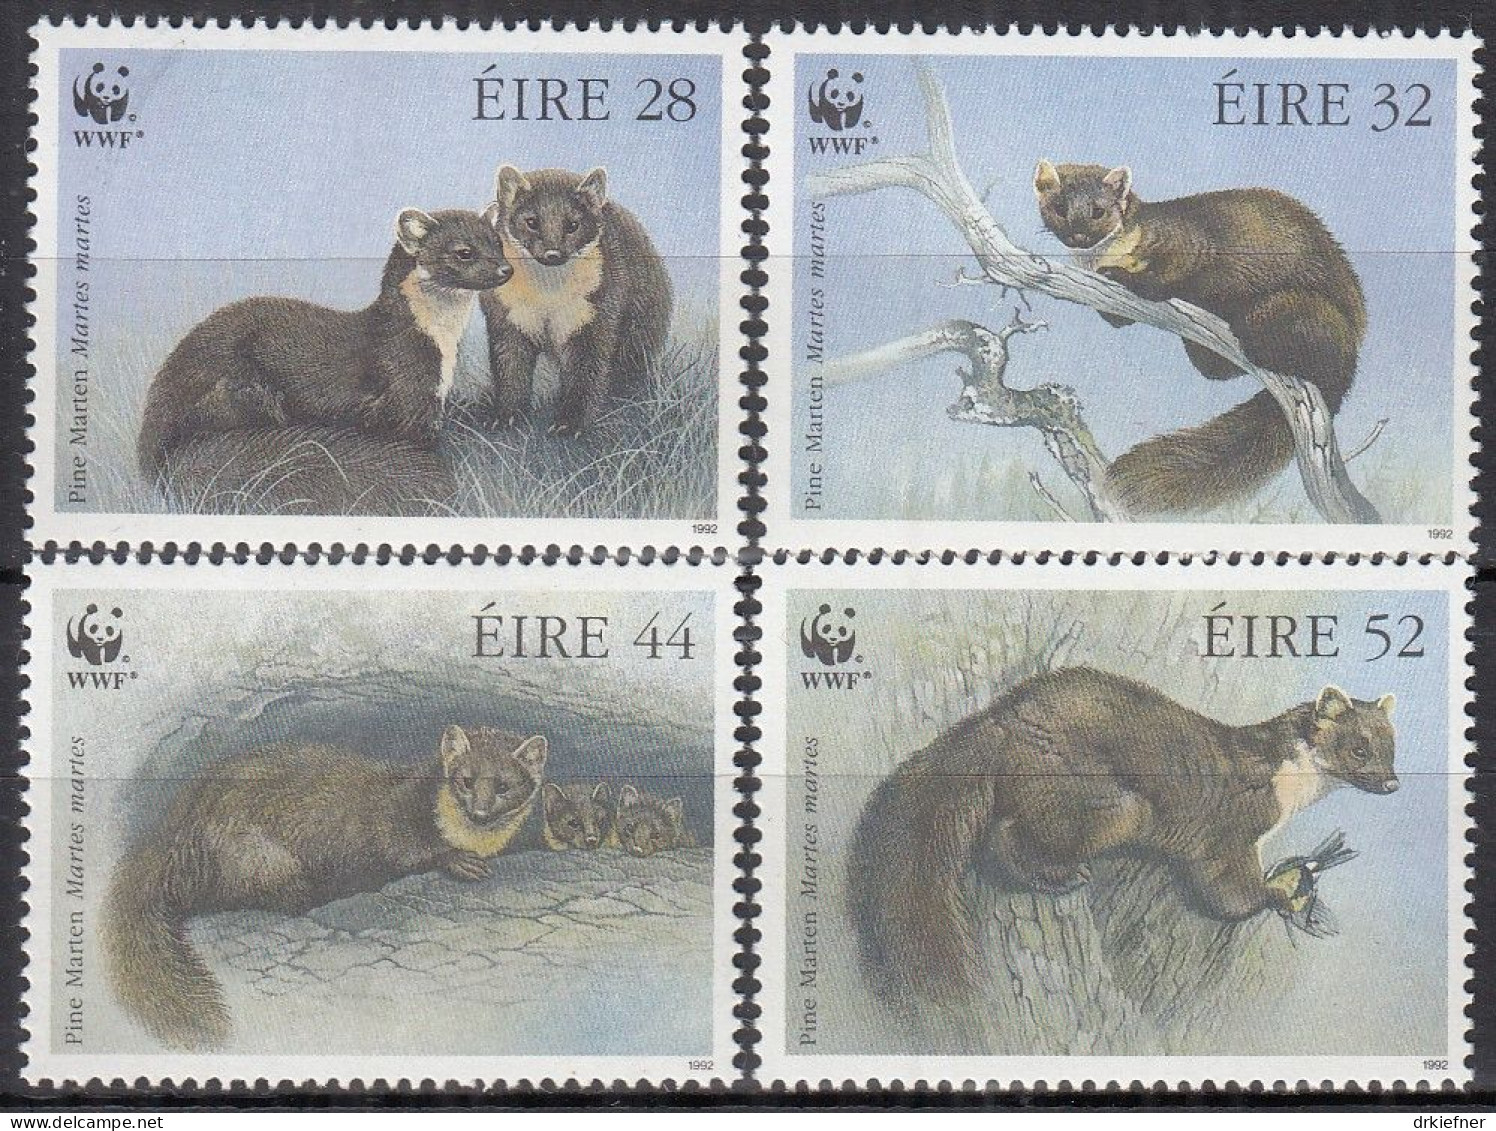 IRLAND  798-801, Postfrisch **, WWF, Weltweiter Naturschutz: Baummarder, 1992 - Ongebruikt